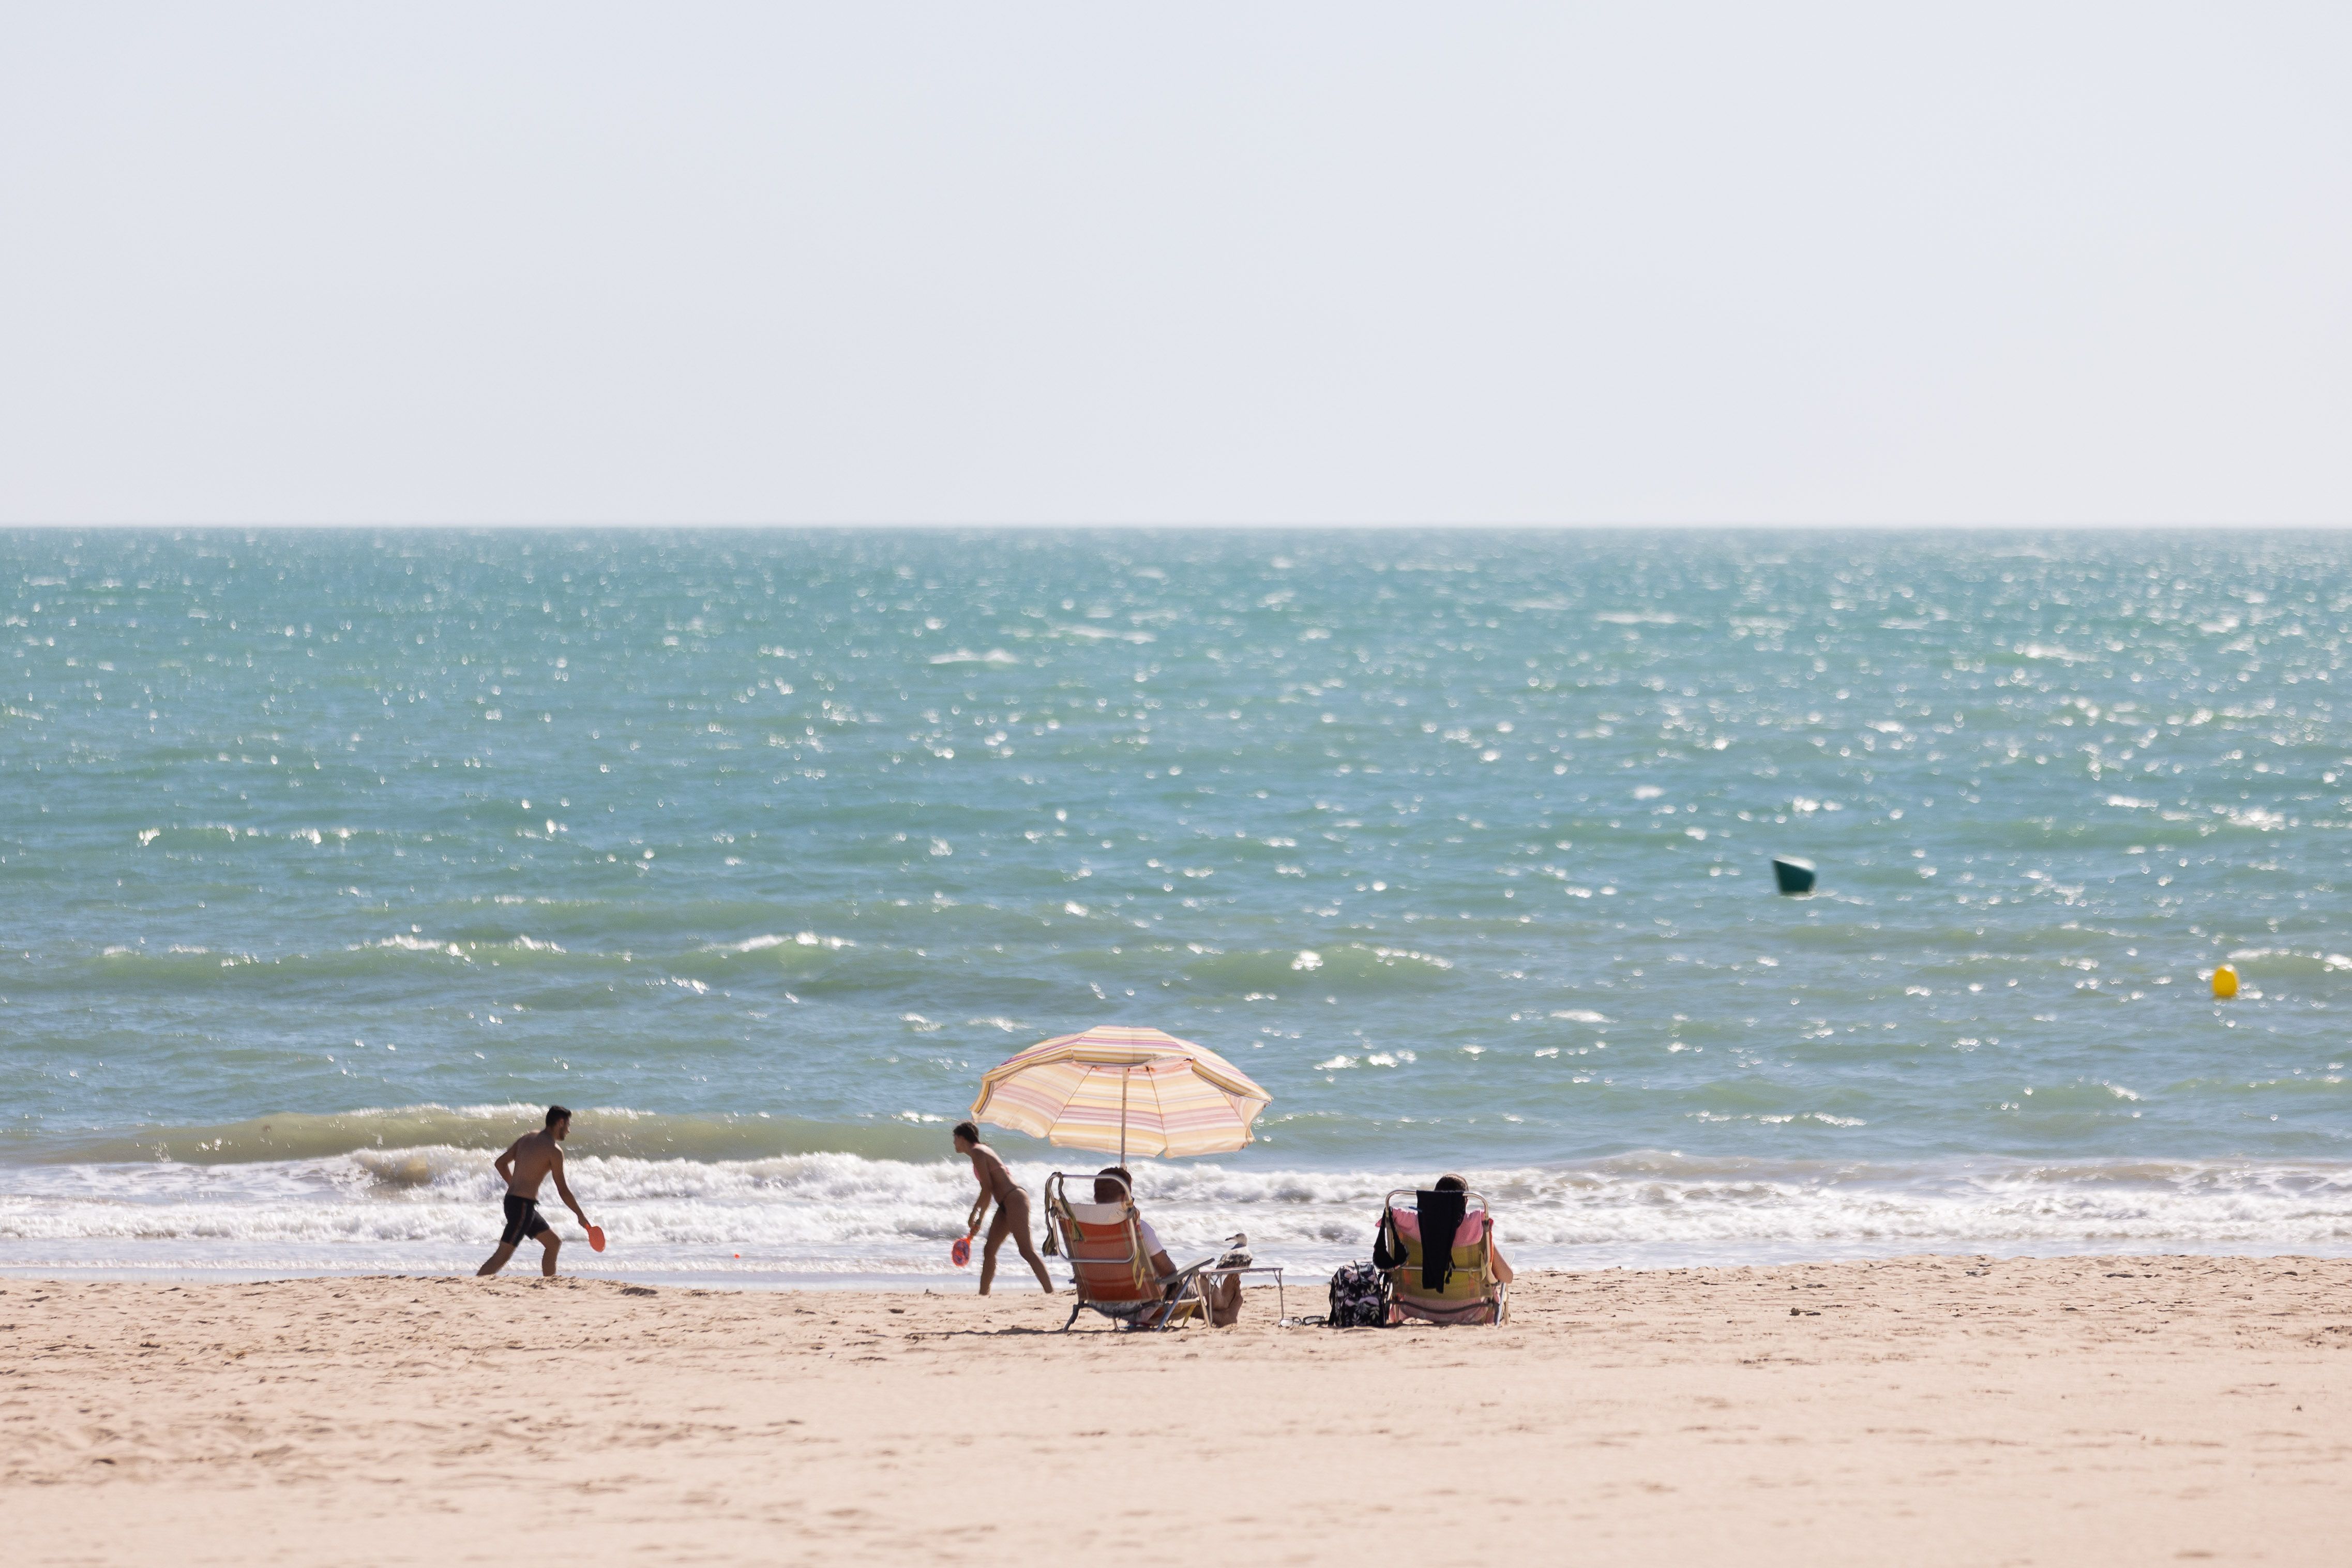 Personas juegan en la playa de La Victoria, donde tiene lugar la agresión sexual.